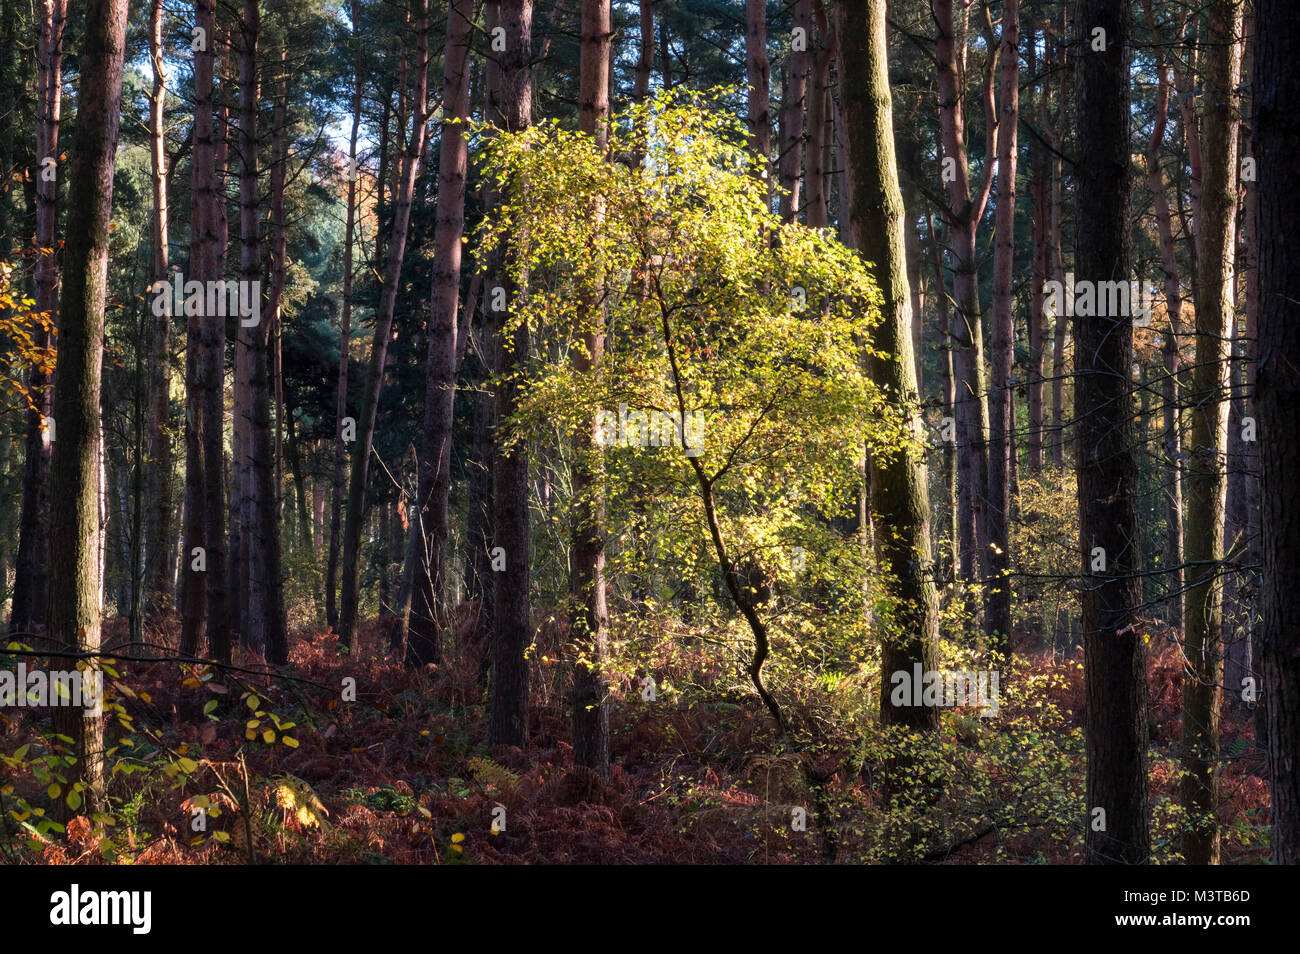 Feu de forêt, d'un arbrisseau de hêtre en automne, Delamere Forest, Delamere, Cheshire, England, UK Banque D'Images